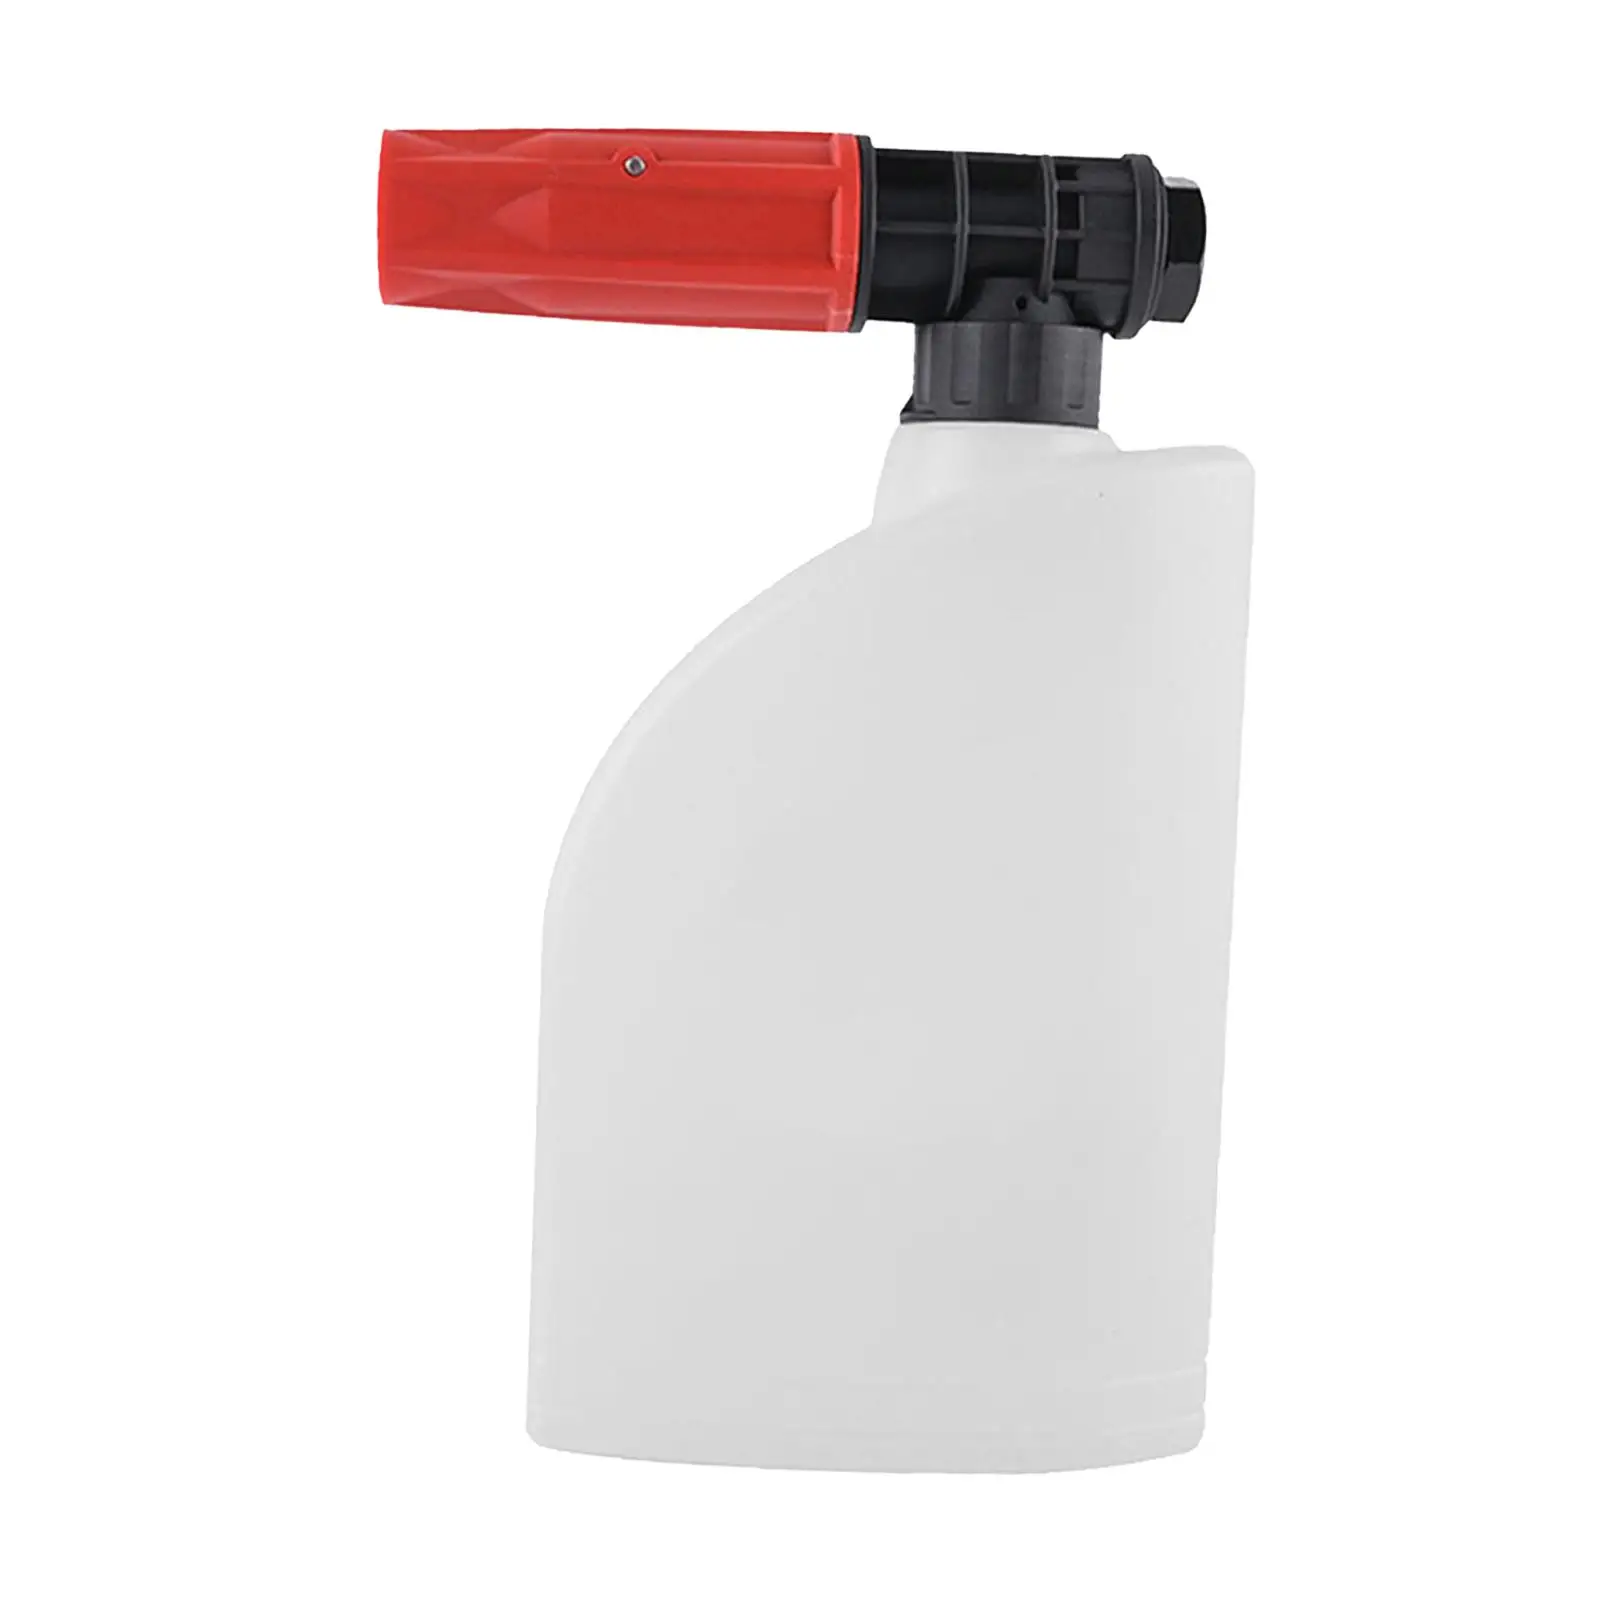 Car Wash Foam Pressure Sprayer 0.6L Car Wash Sprayer Handheld Foaming Sprayer for cars cleaning yard Cleaning Car Washing